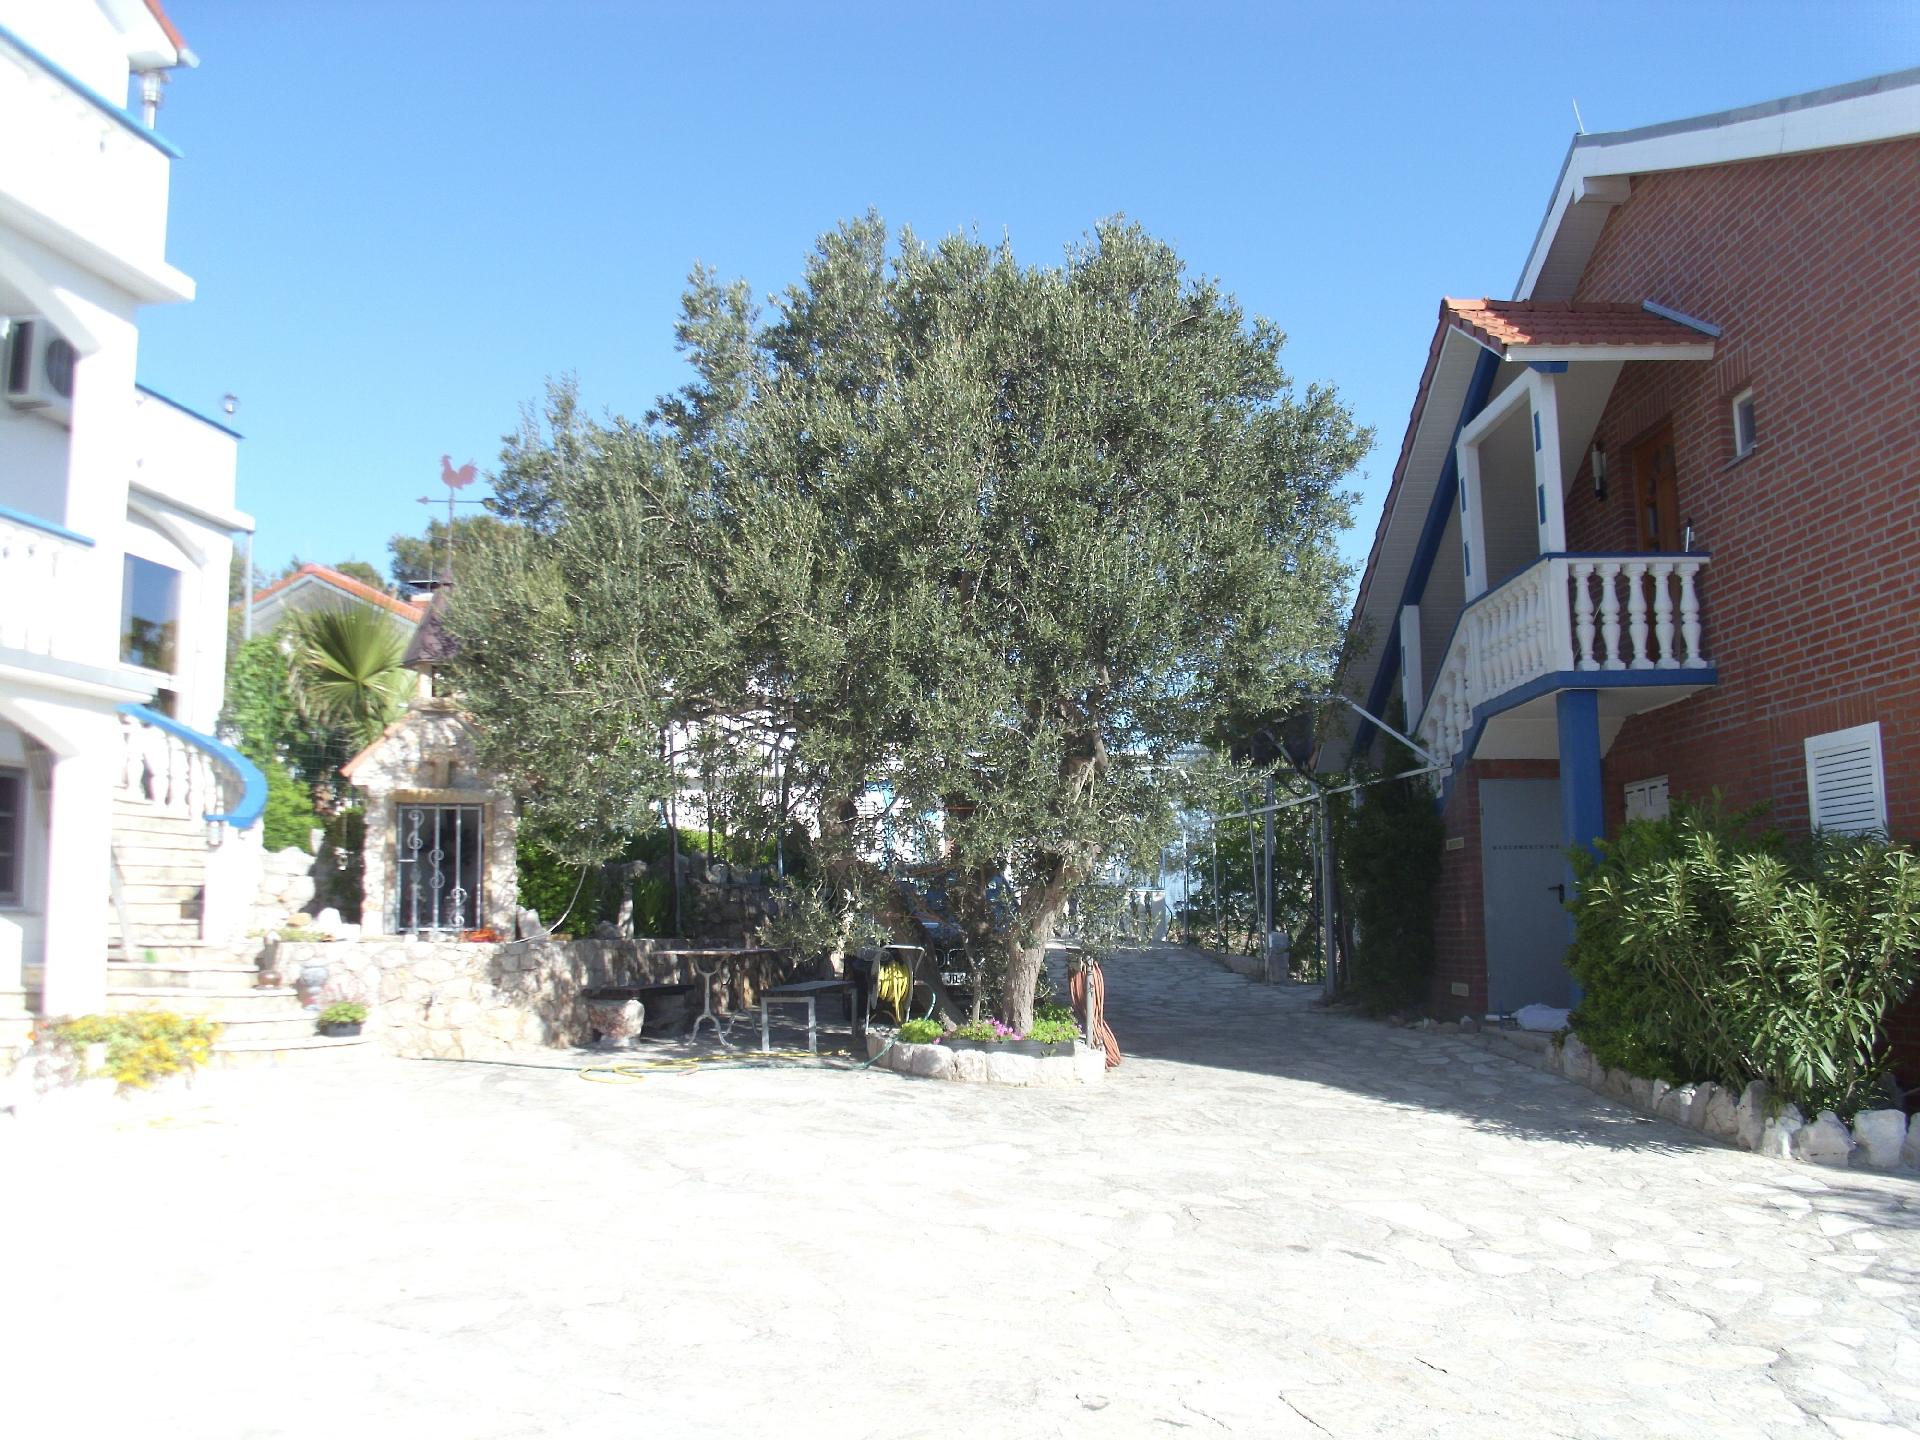 Ferienwohnung für vier Personen mit Terrasse  Ferienhaus in Kroatien